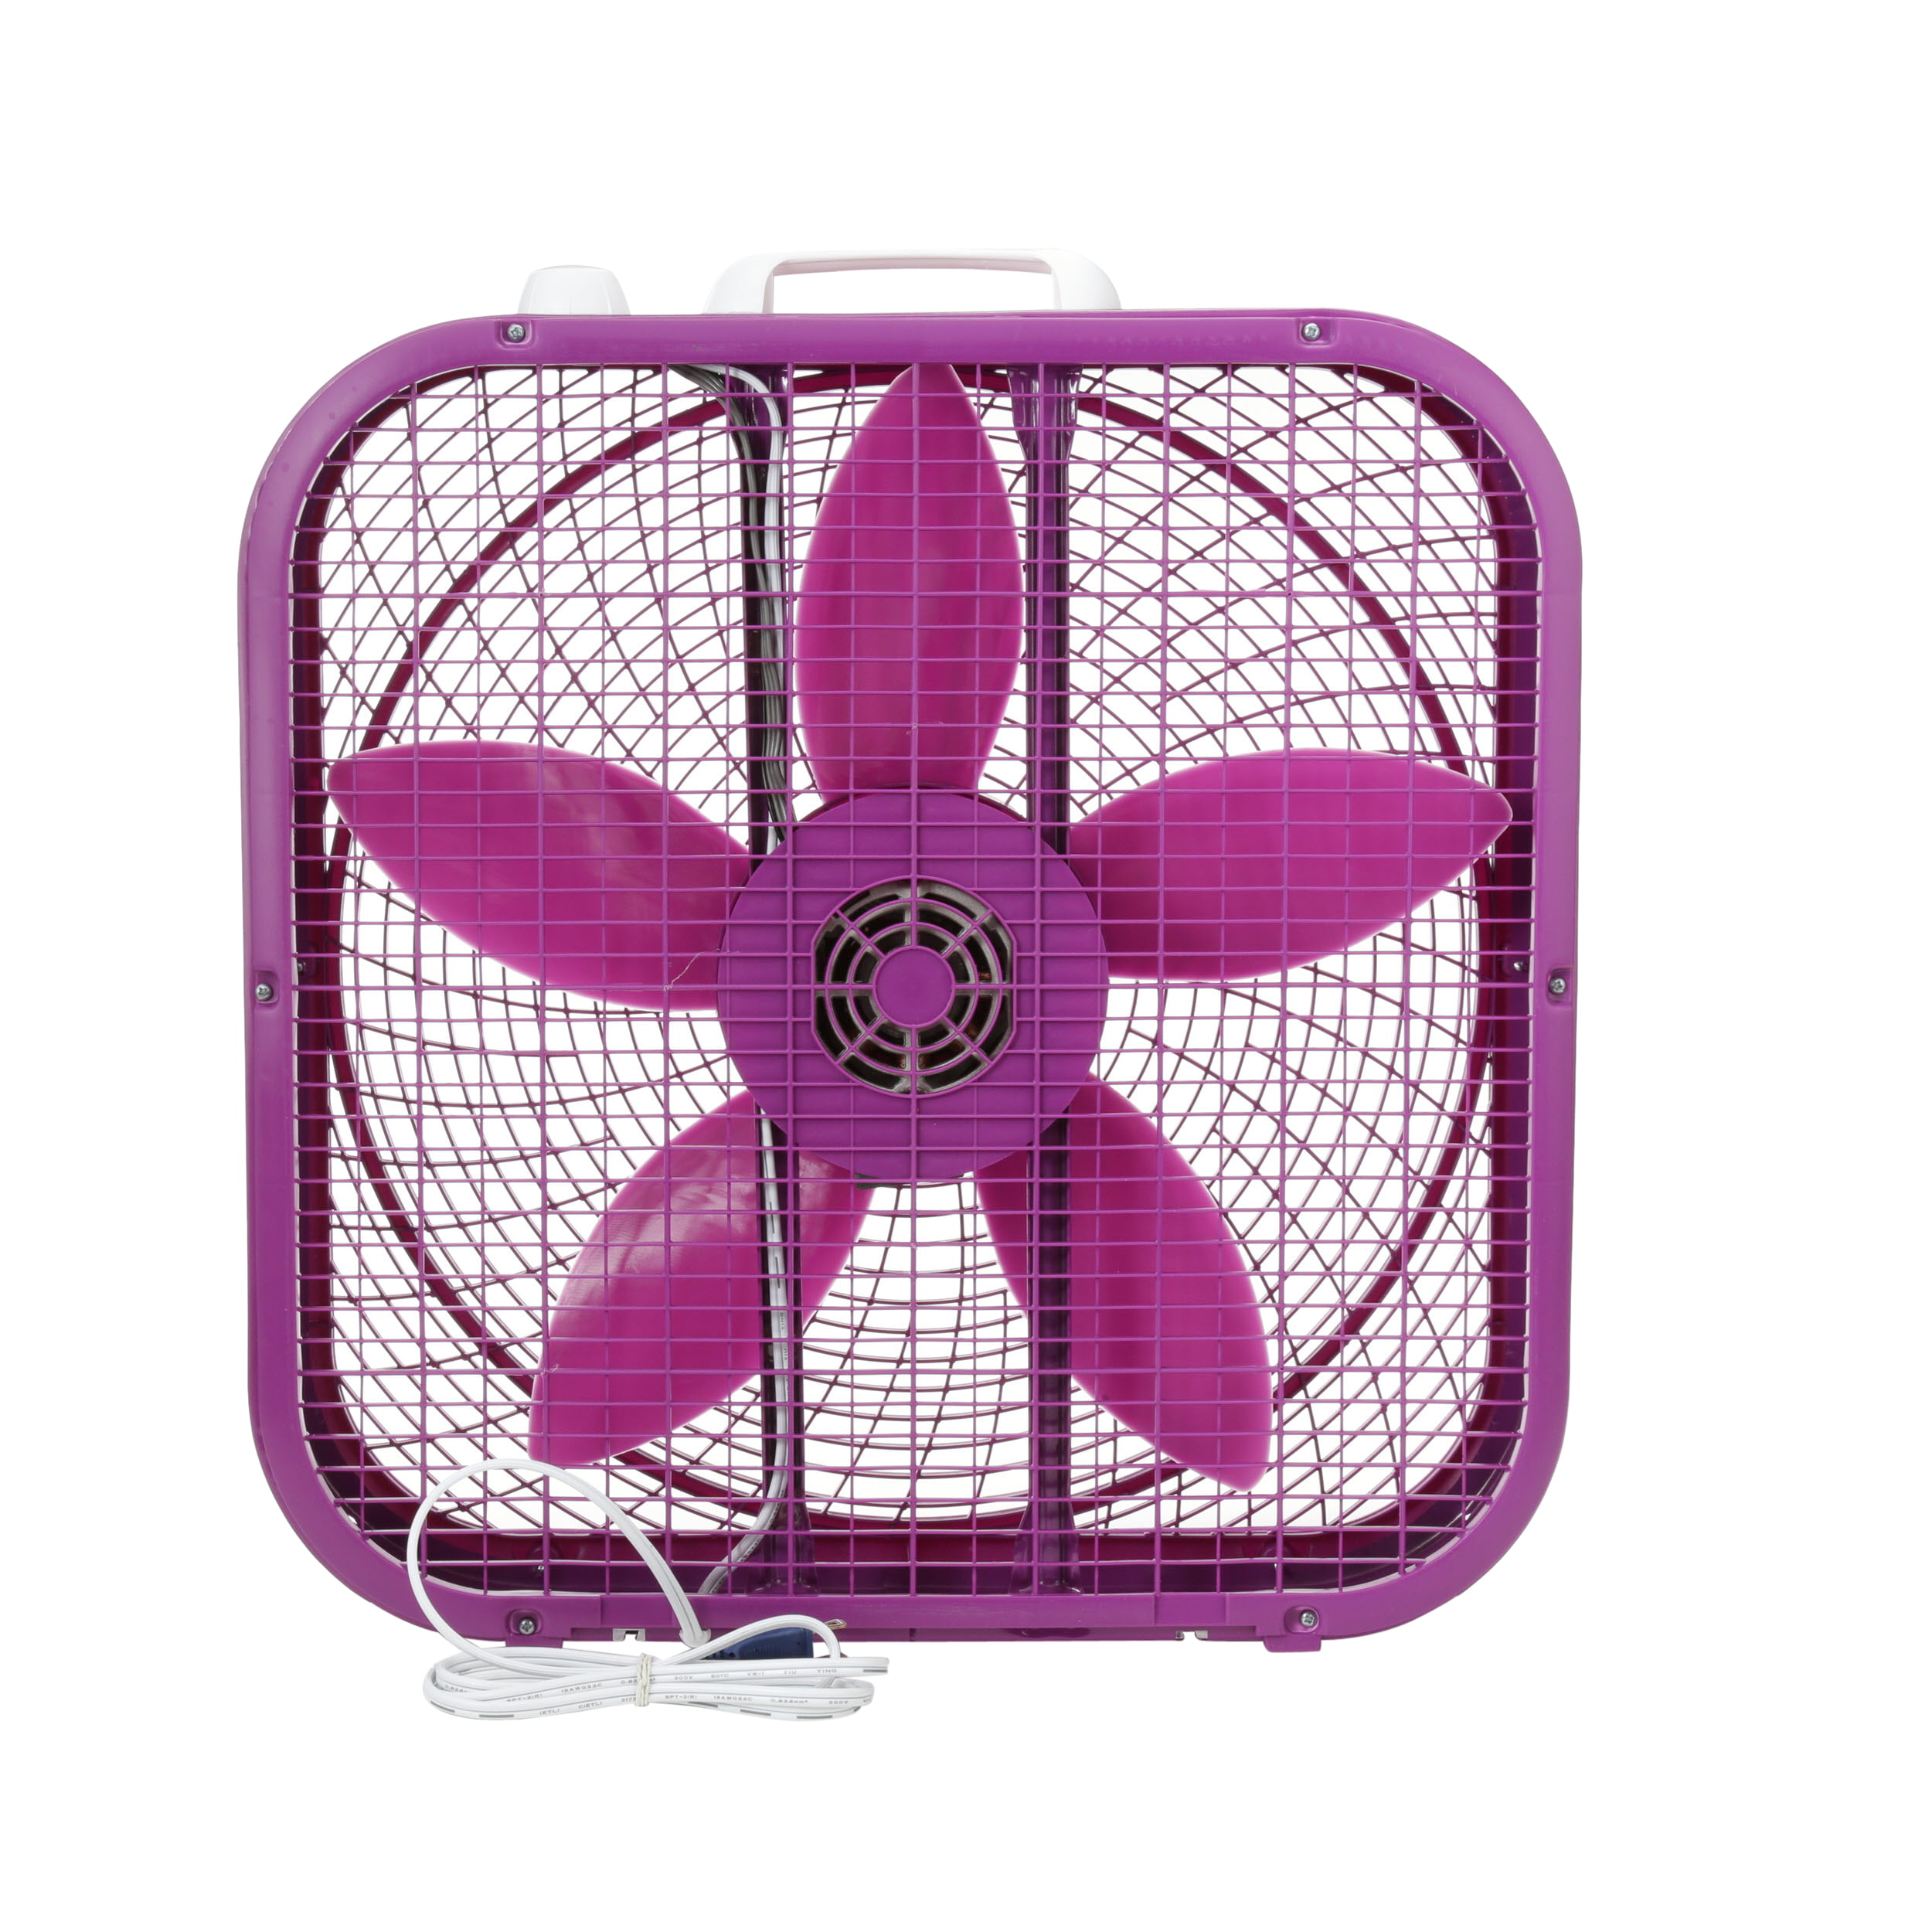 Вентилятор 20 минут. New Purple Lasko Box Fan. Вентилятор 20 Box Fan. Вентилятор Osca Fan Box. Вентилятор коробка f120-Fan.